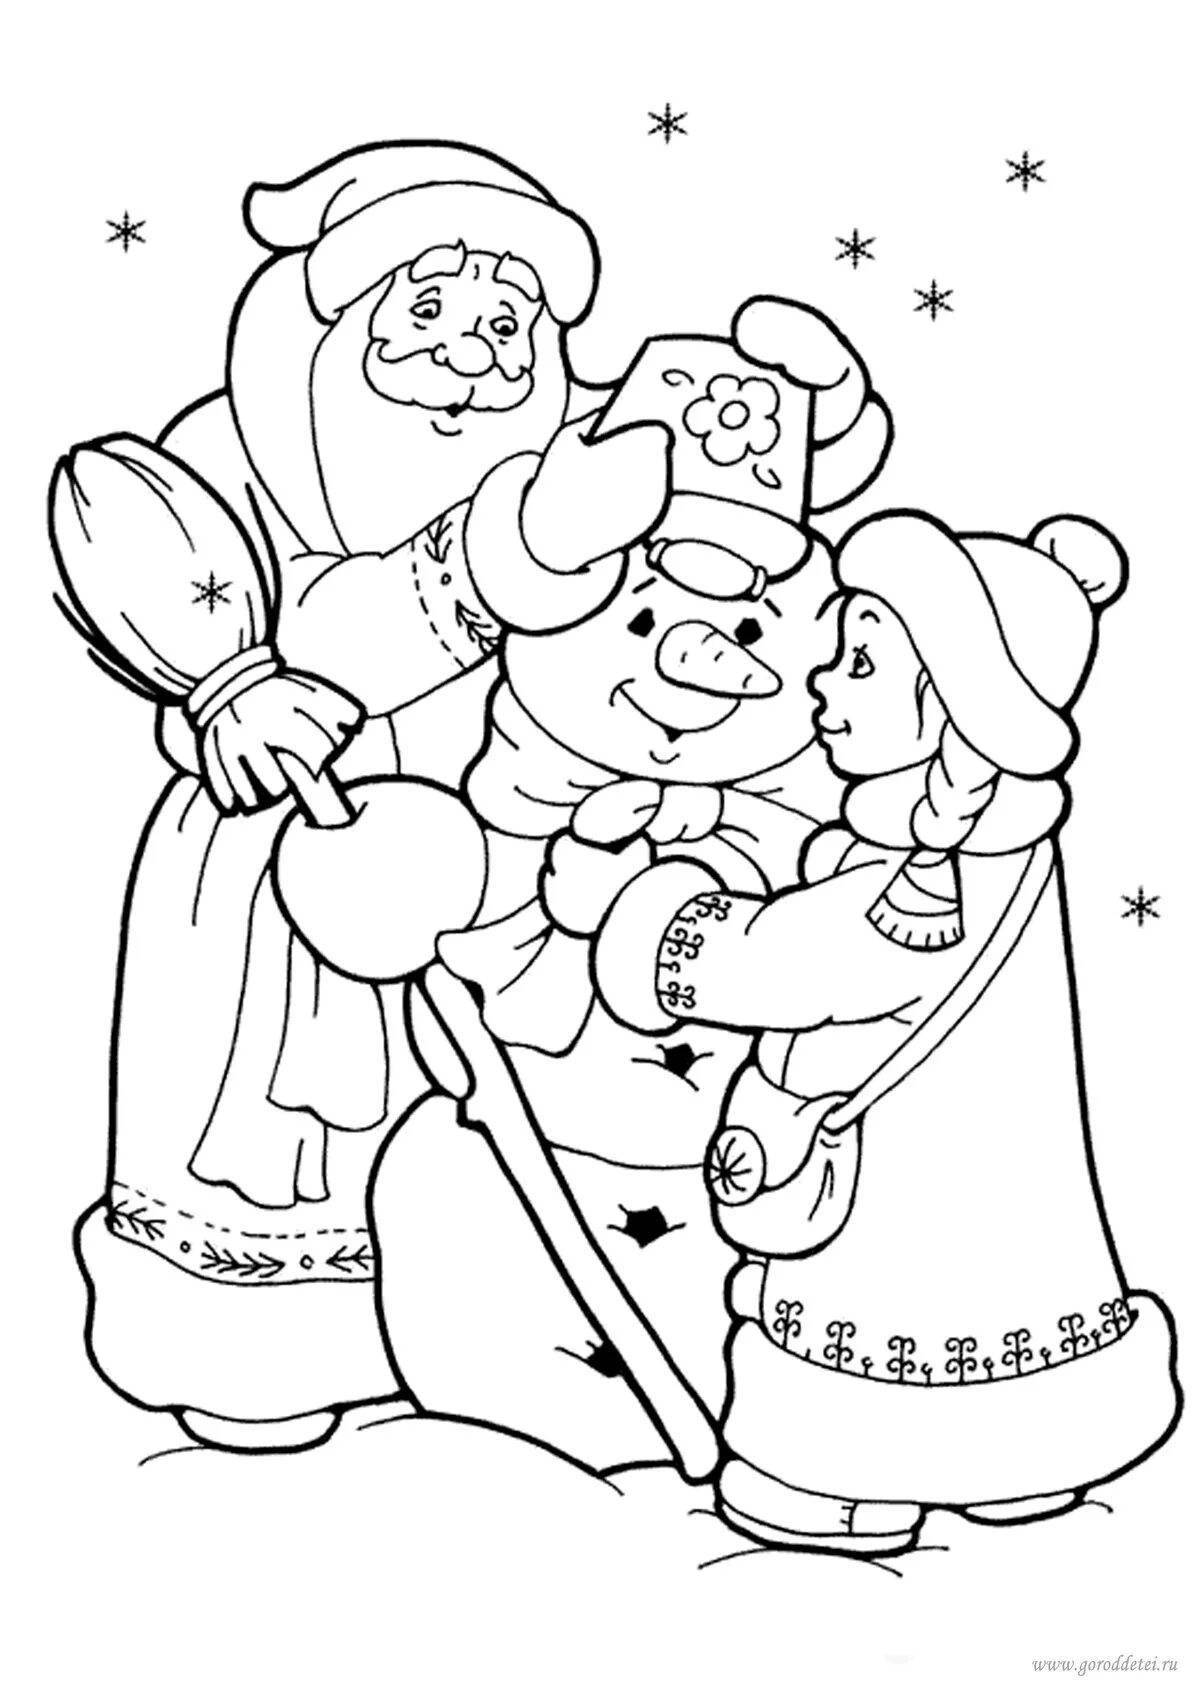 Радостный санта-клаус и снегурочка рождество раскраски